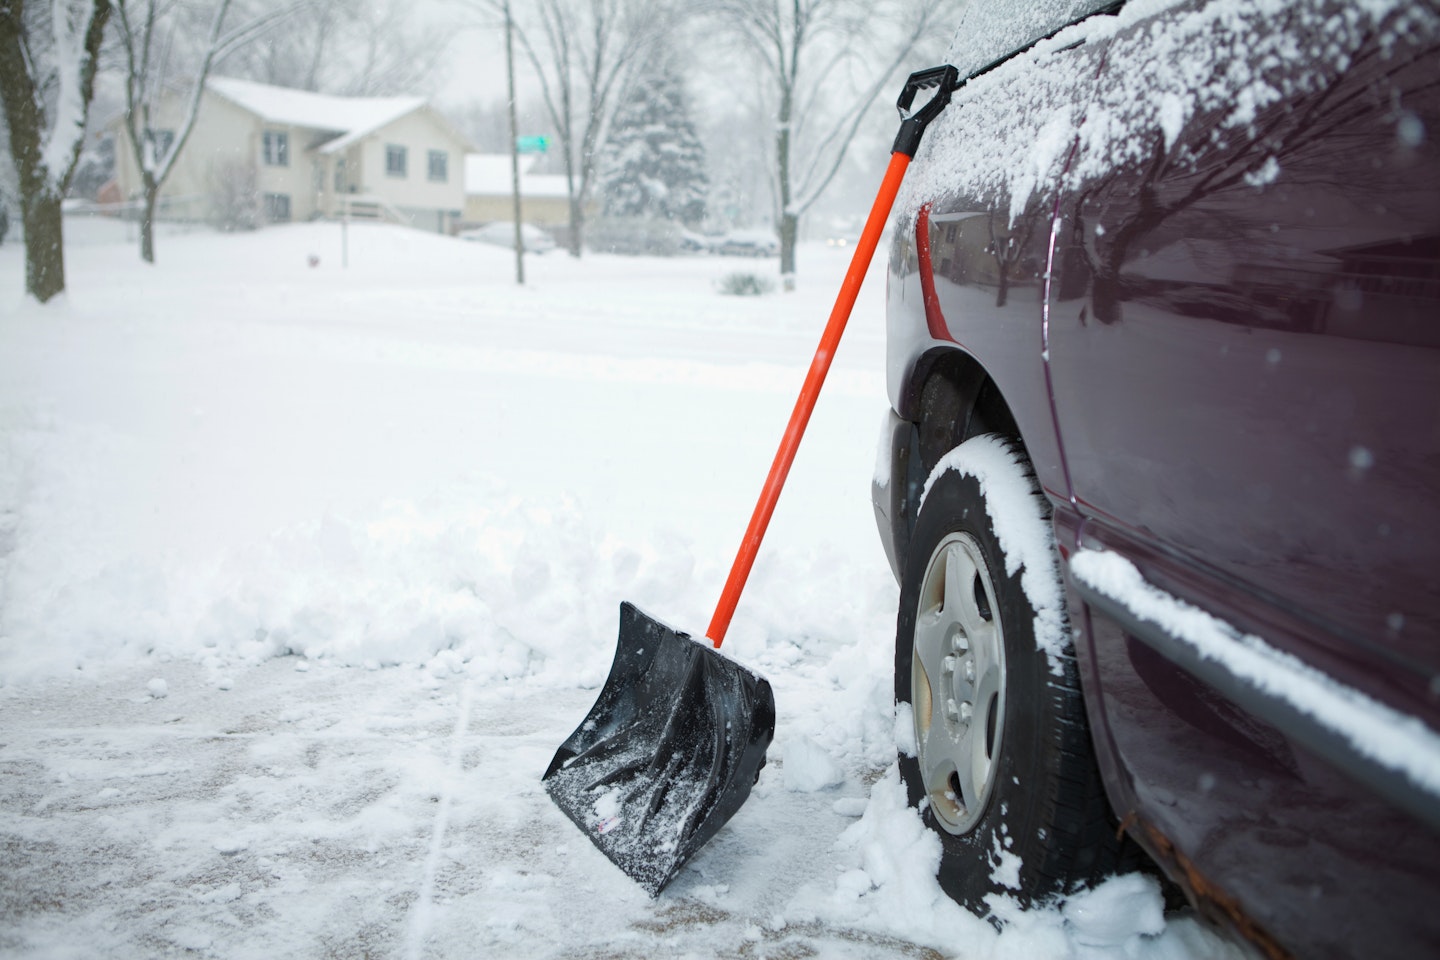 A snow shovel next to a car